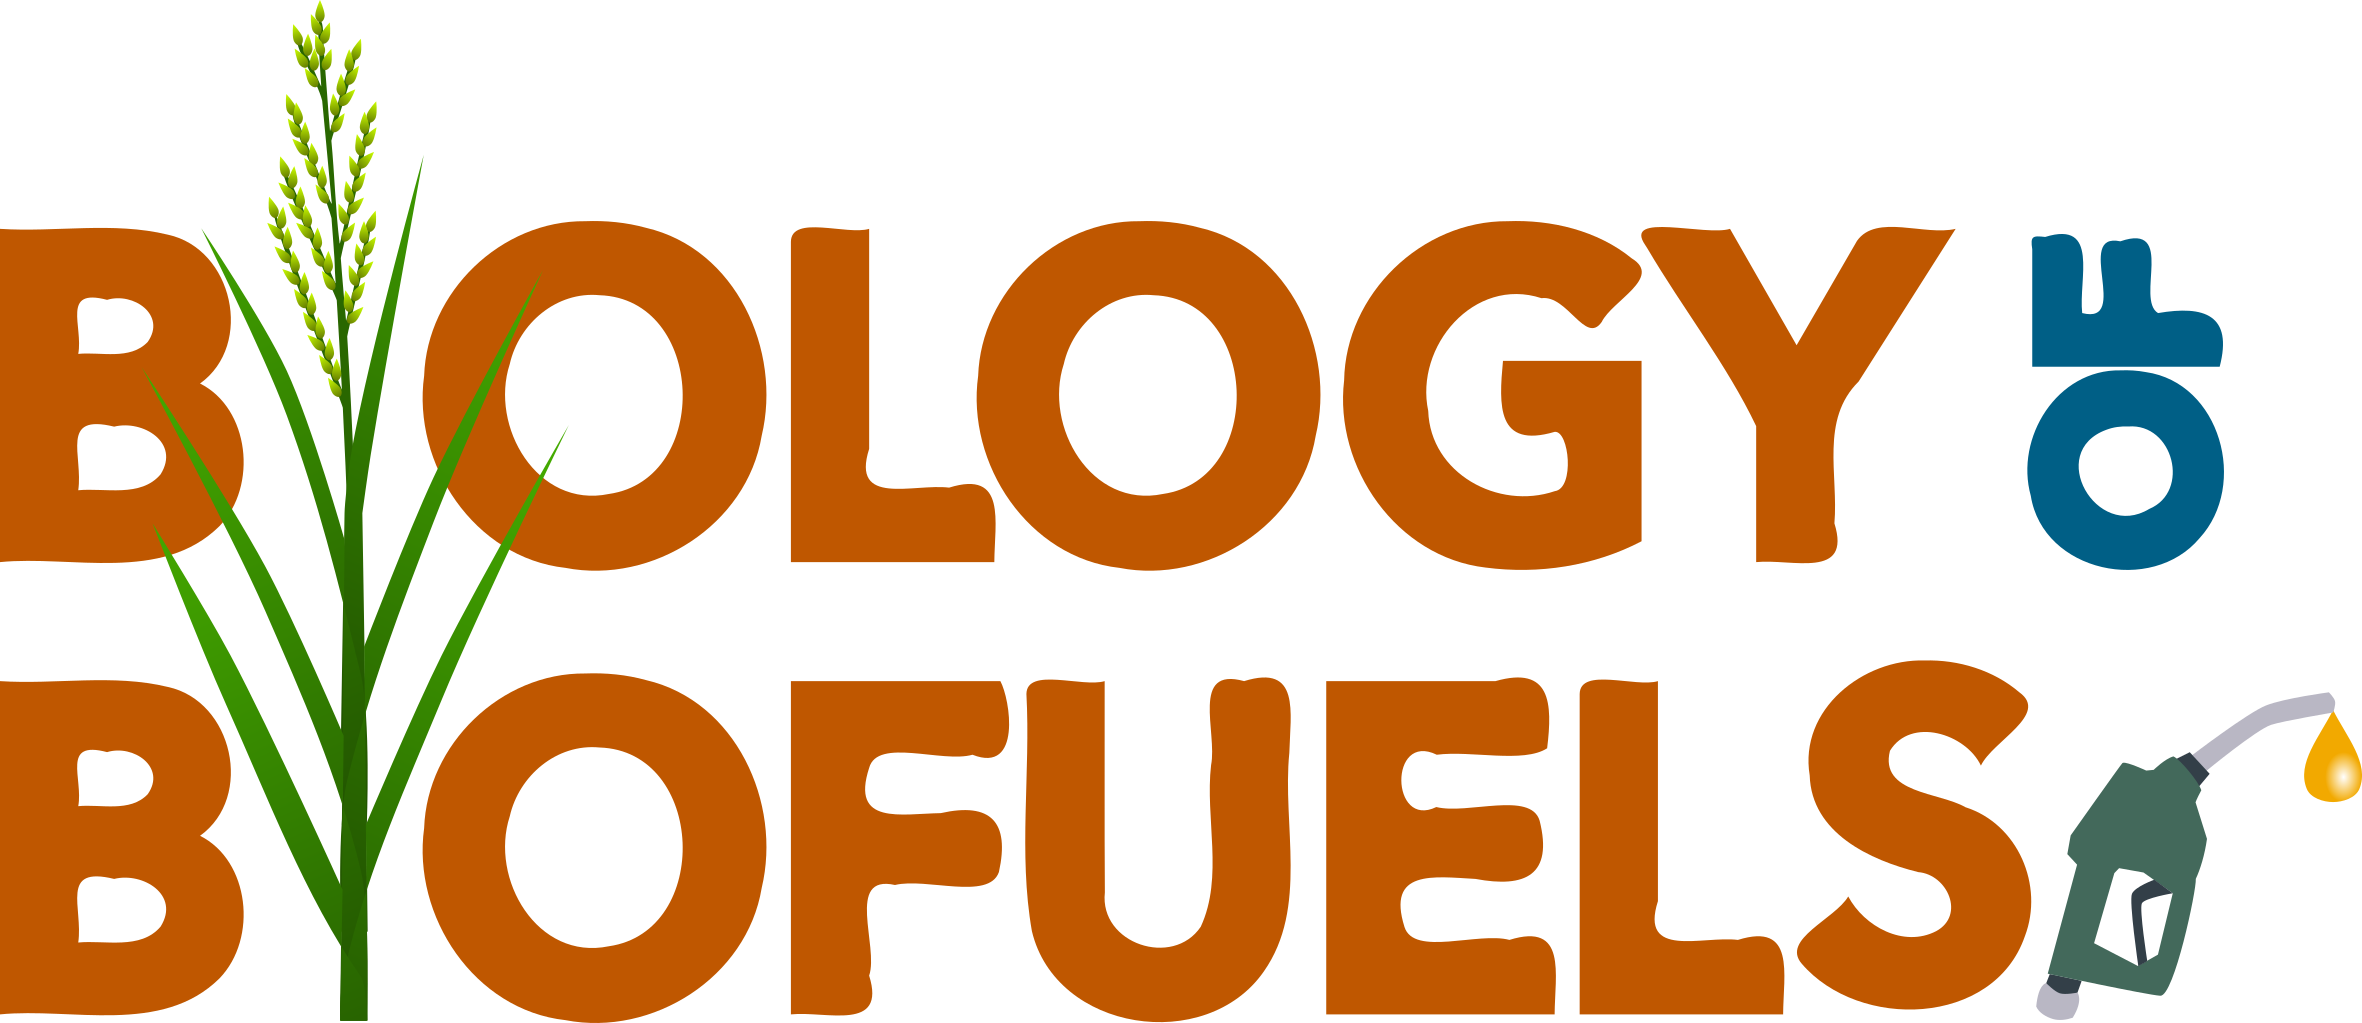 biofuels logo long